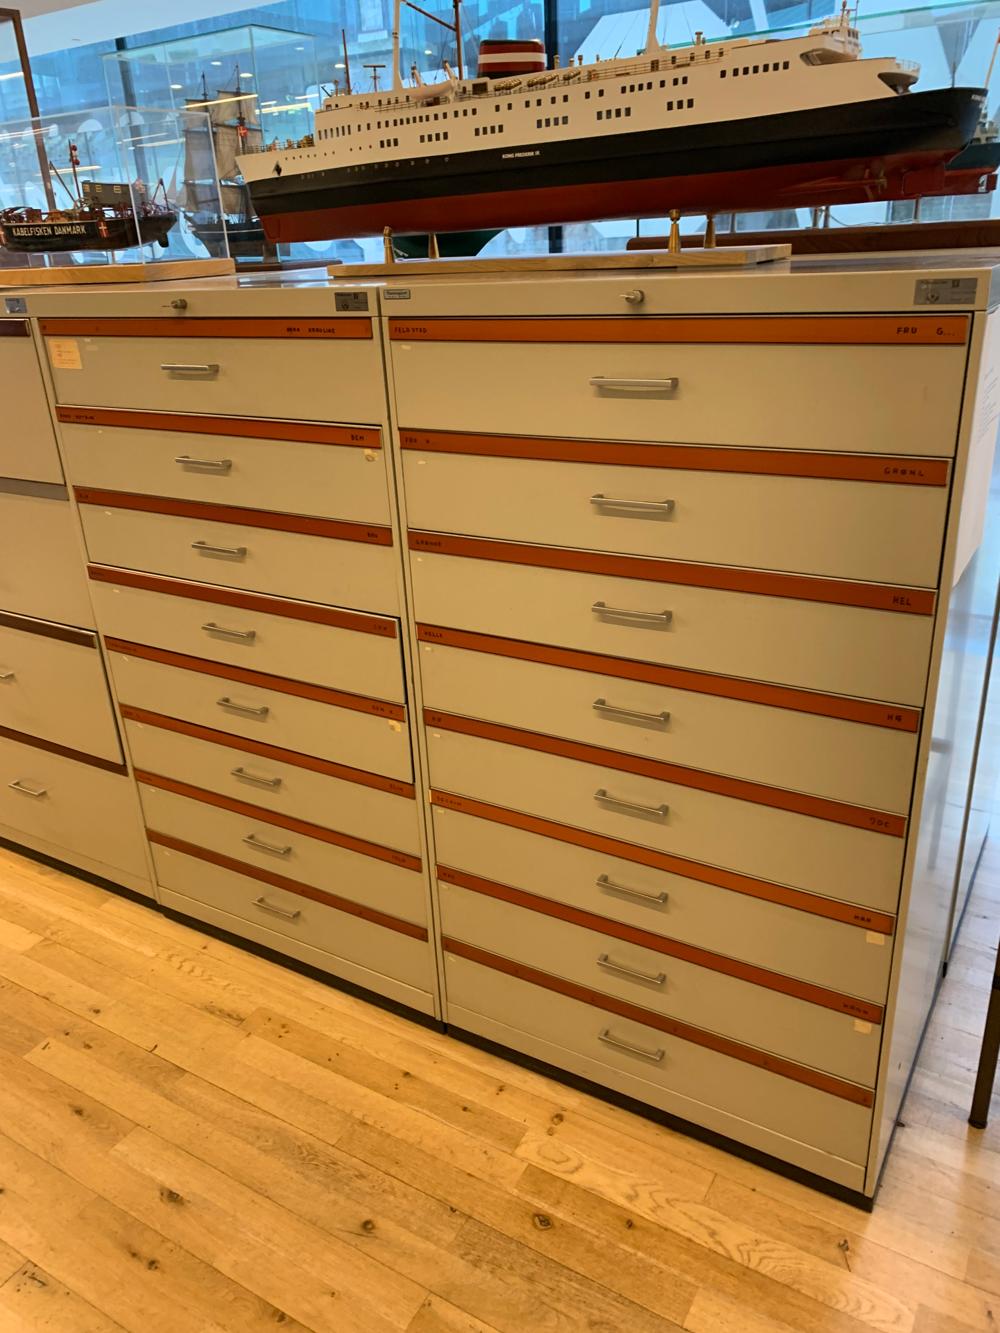 Her er det analoge arkiv med tusinder af arkivkort. På toppen af kabinettet ses DSB-færgen 'Kong Frederik IX'.